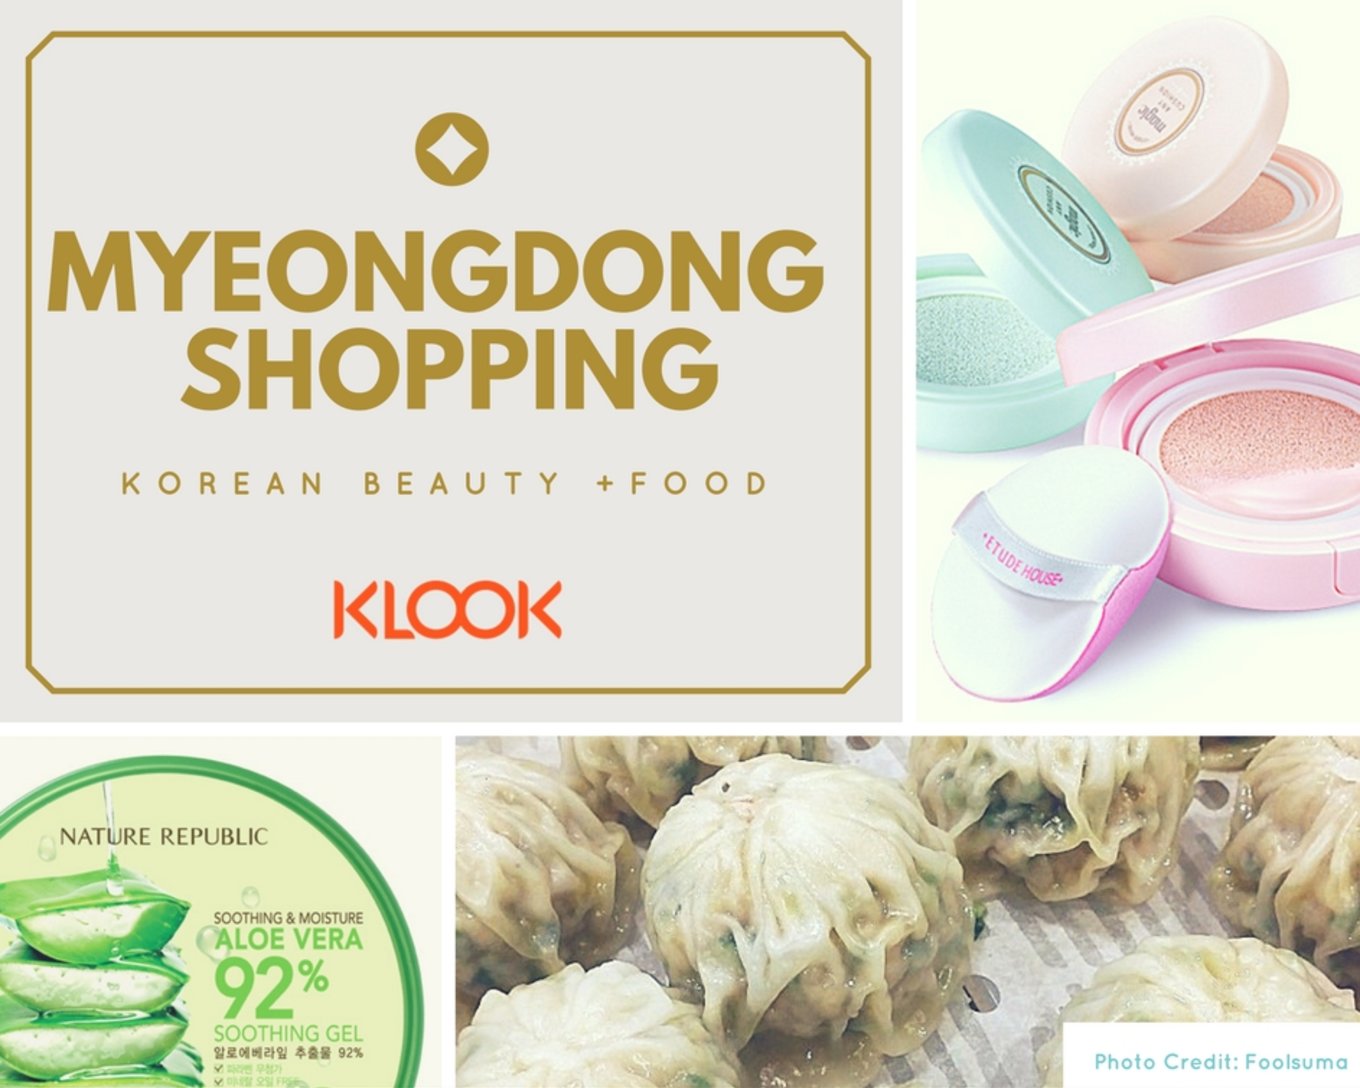 Myeongdong shopping